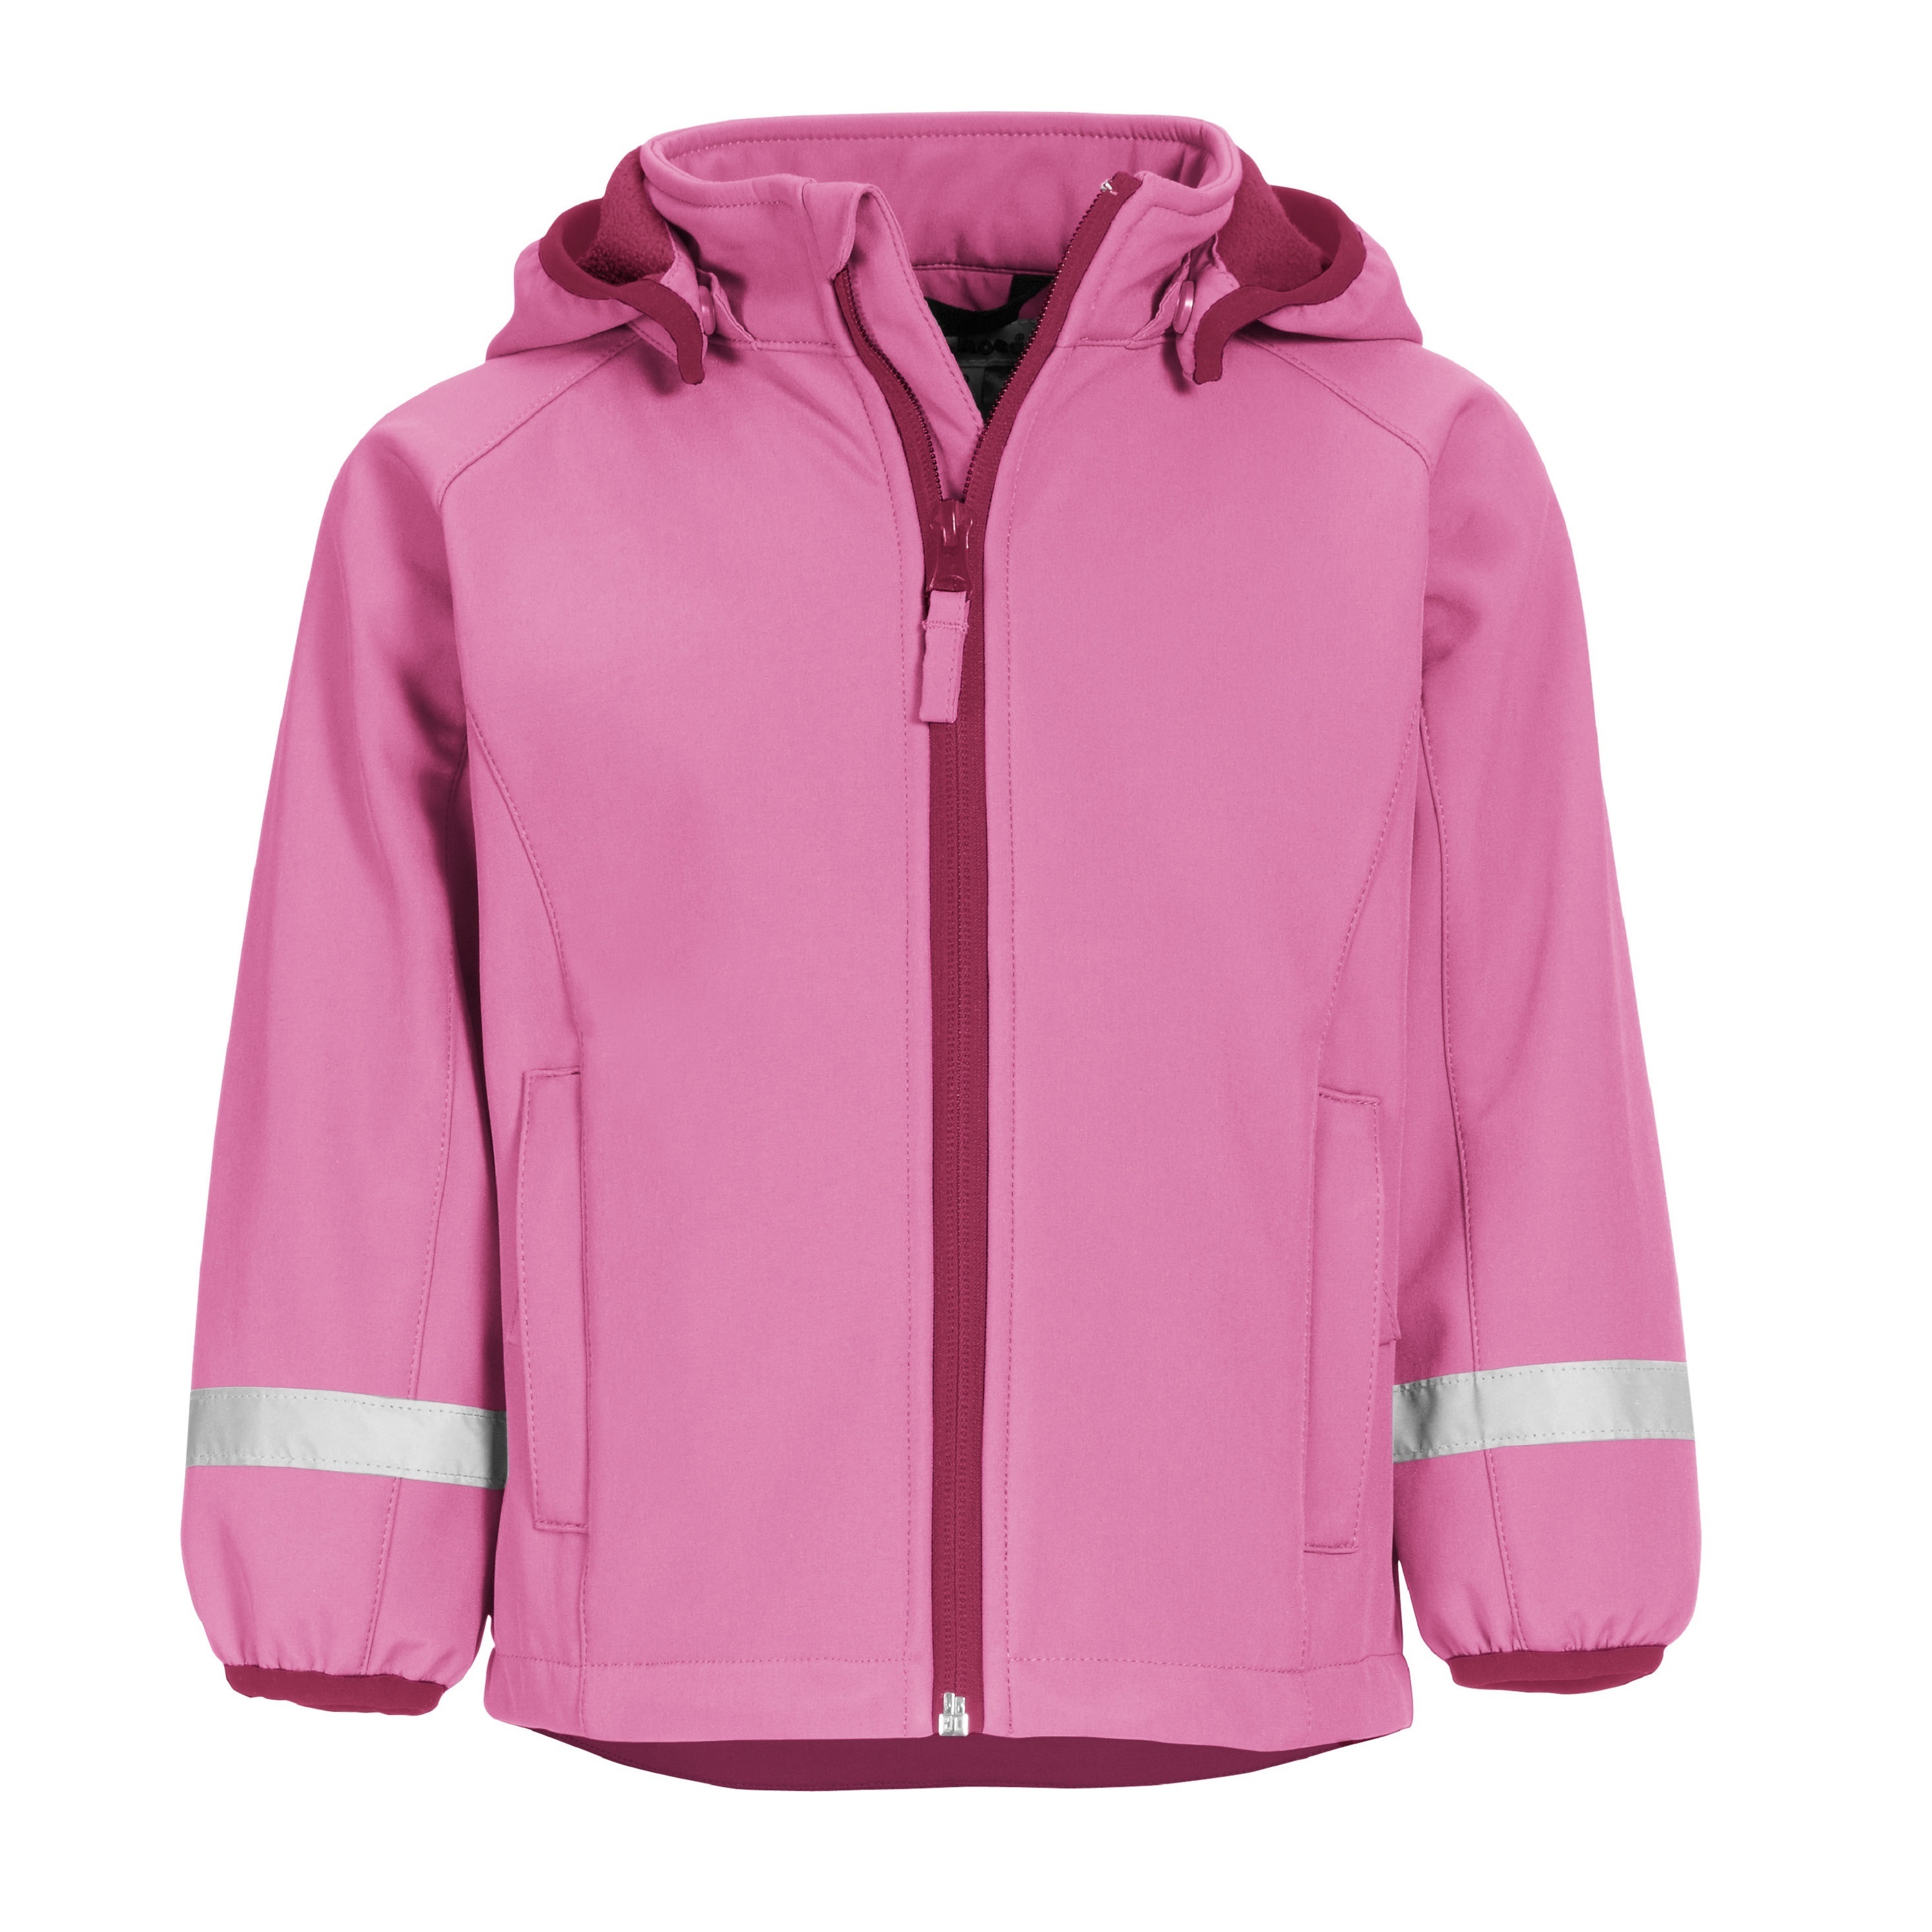 Куртка детская Playshoes 430110, розовый, 140 зеленая мембранная куртка herno детская